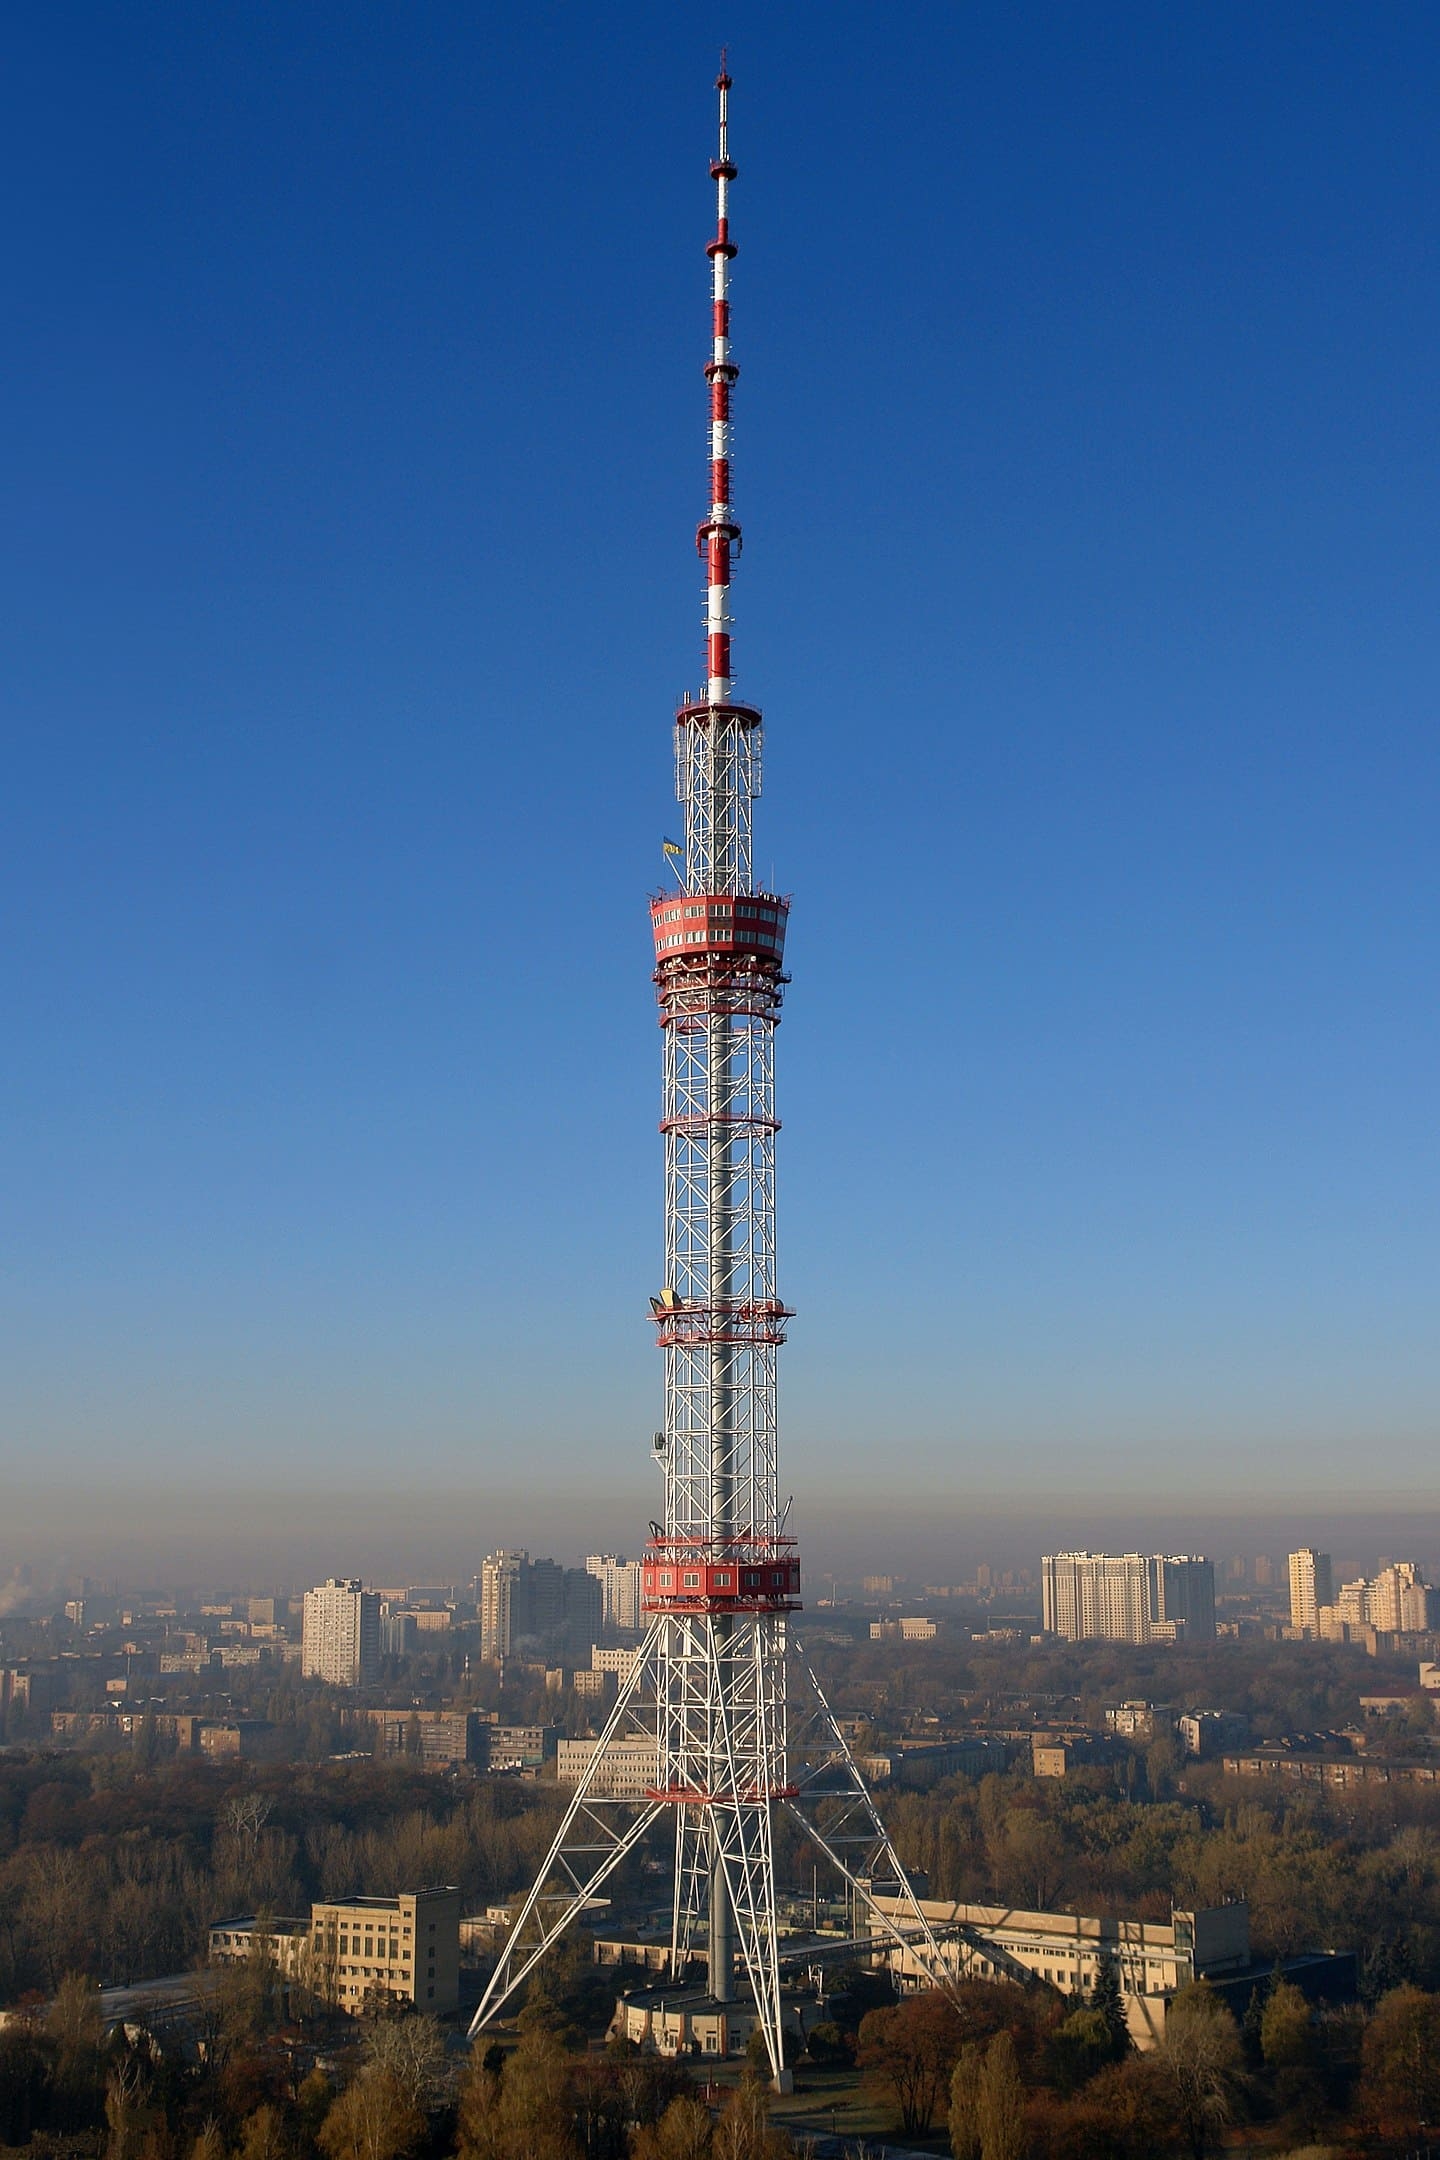 Kiev TV Tower - 385 metros - Ucrânia - Foi inaugurada em 1974 na capital Kiev para transmitir sinais de rádio e TV. Com um design que toma forma de agulha e se estreita em direção ao céu, a torre oferece vistas espetaculares do rio Dnieper. Reprodução: Flipar